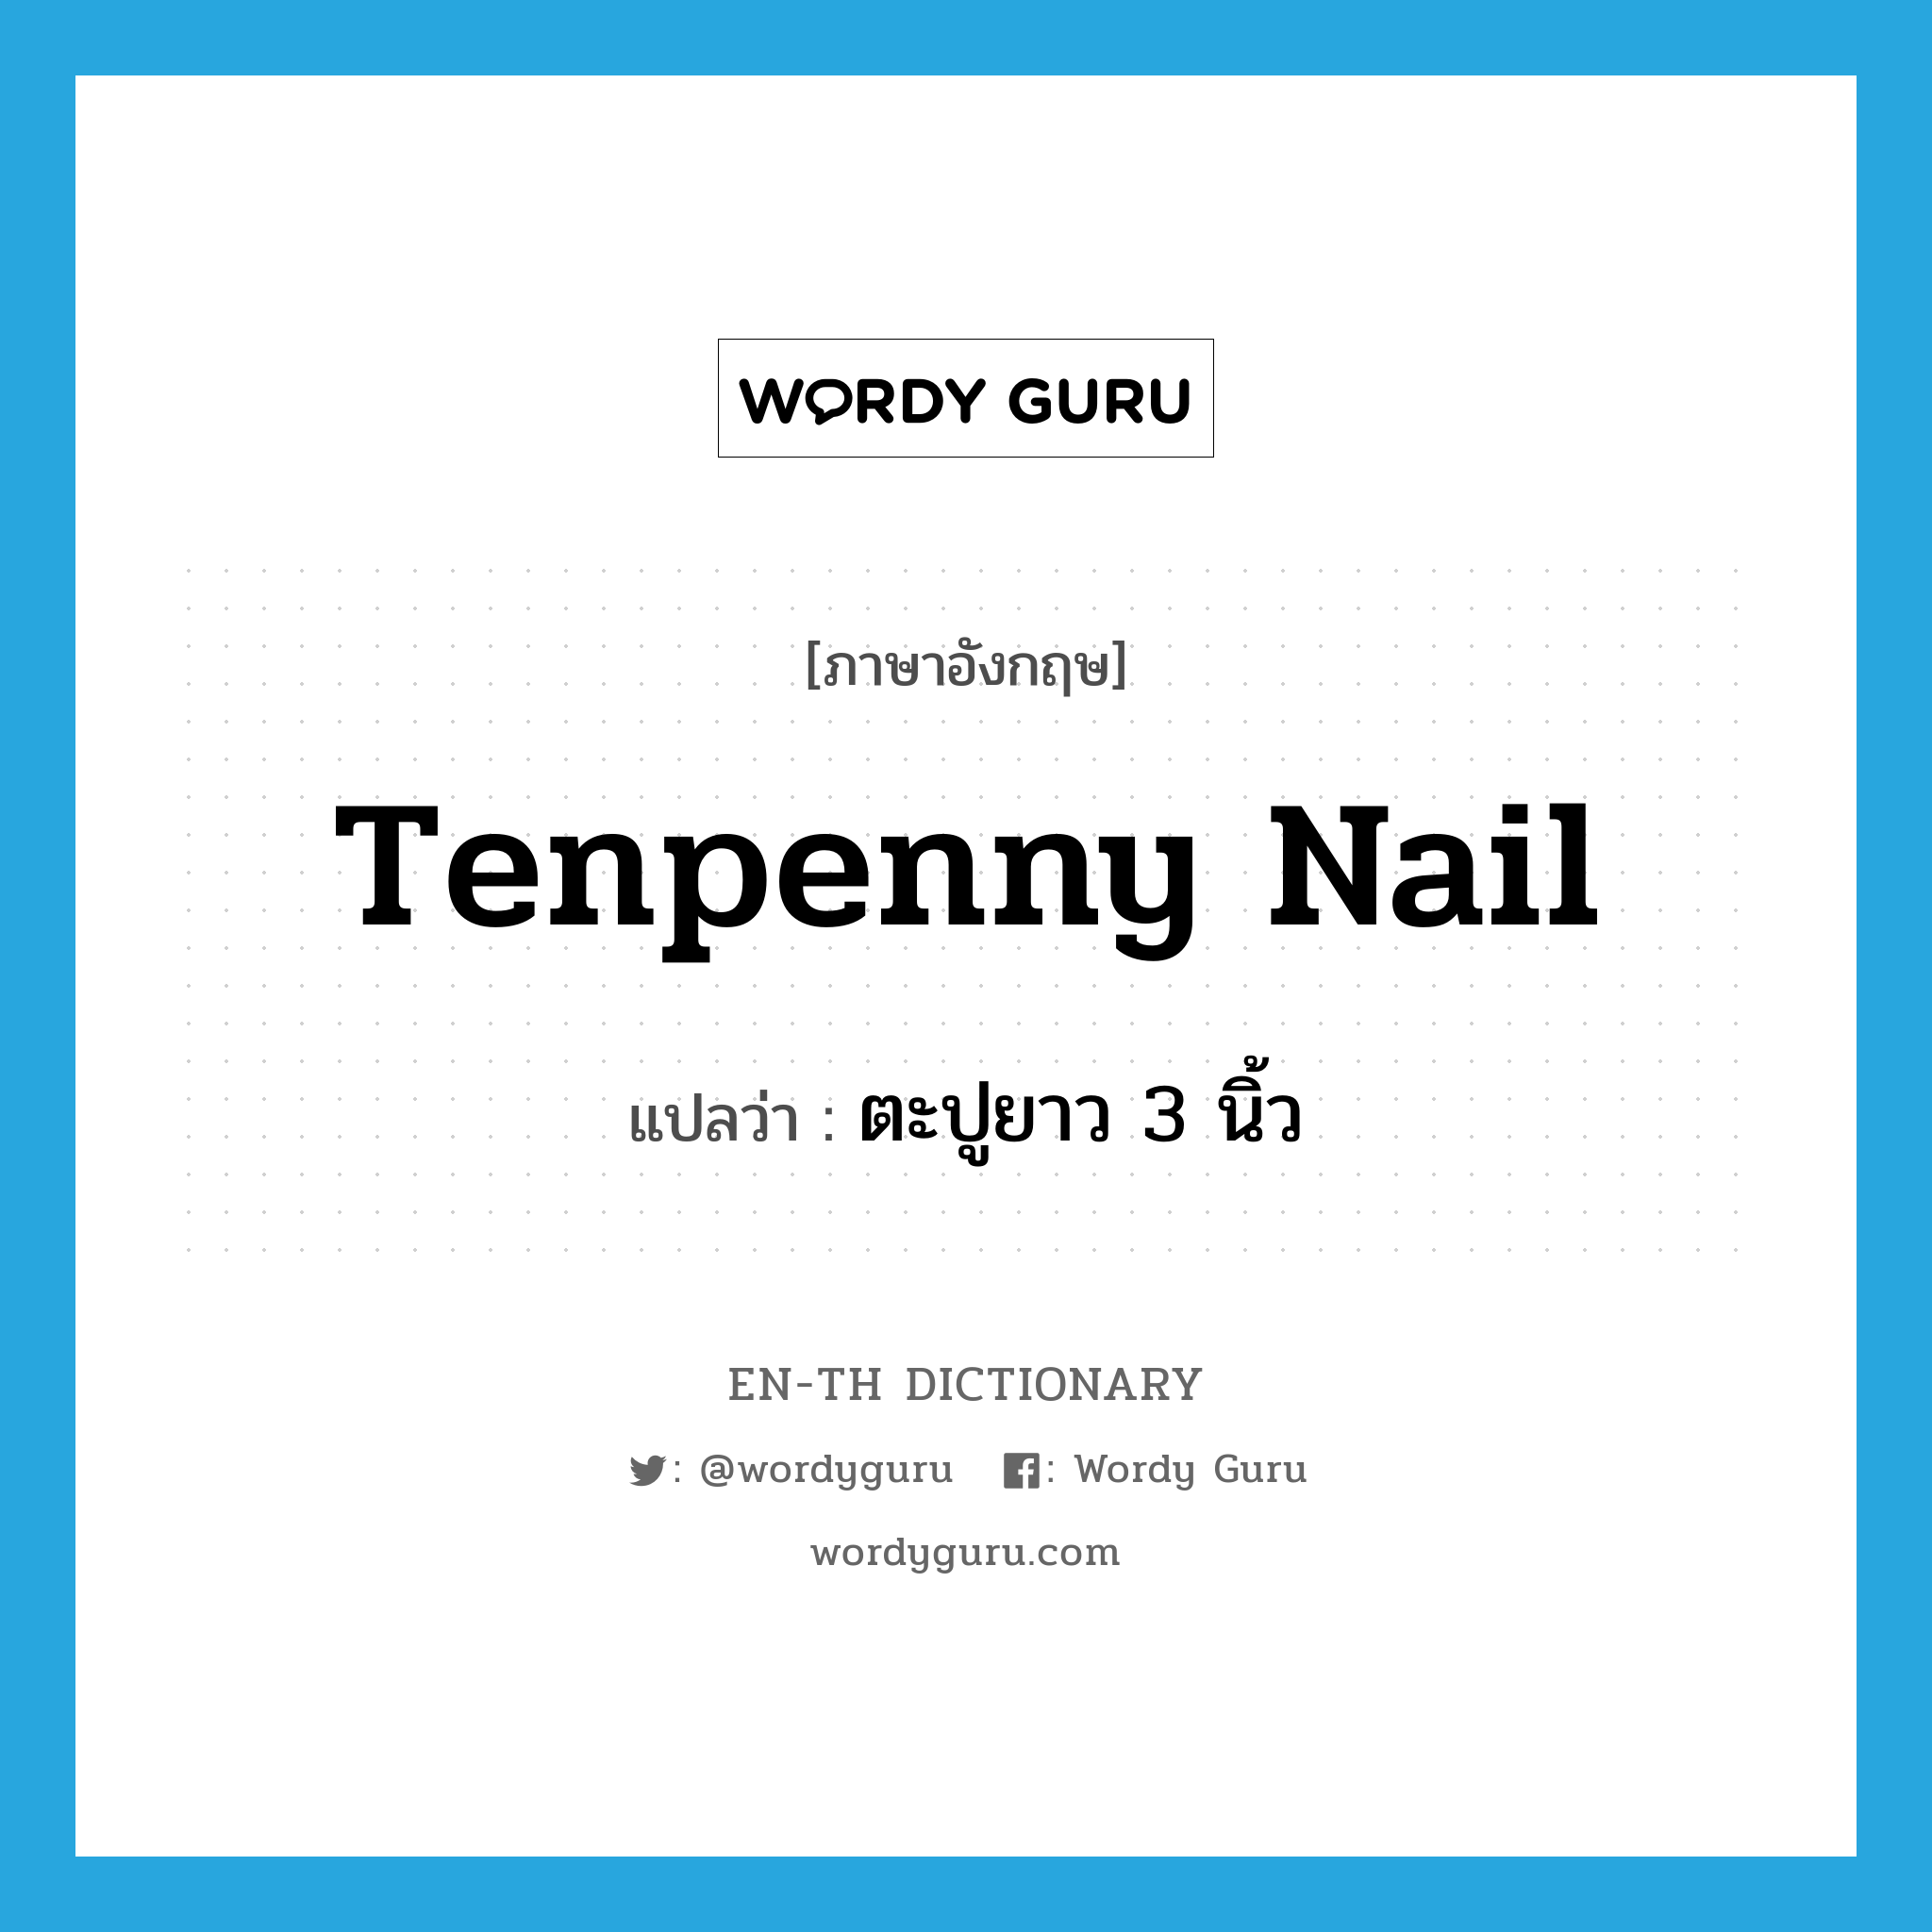 tenpenny nail แปลว่า?, คำศัพท์ภาษาอังกฤษ tenpenny nail แปลว่า ตะปูยาว 3 นิ้ว ประเภท N หมวด N